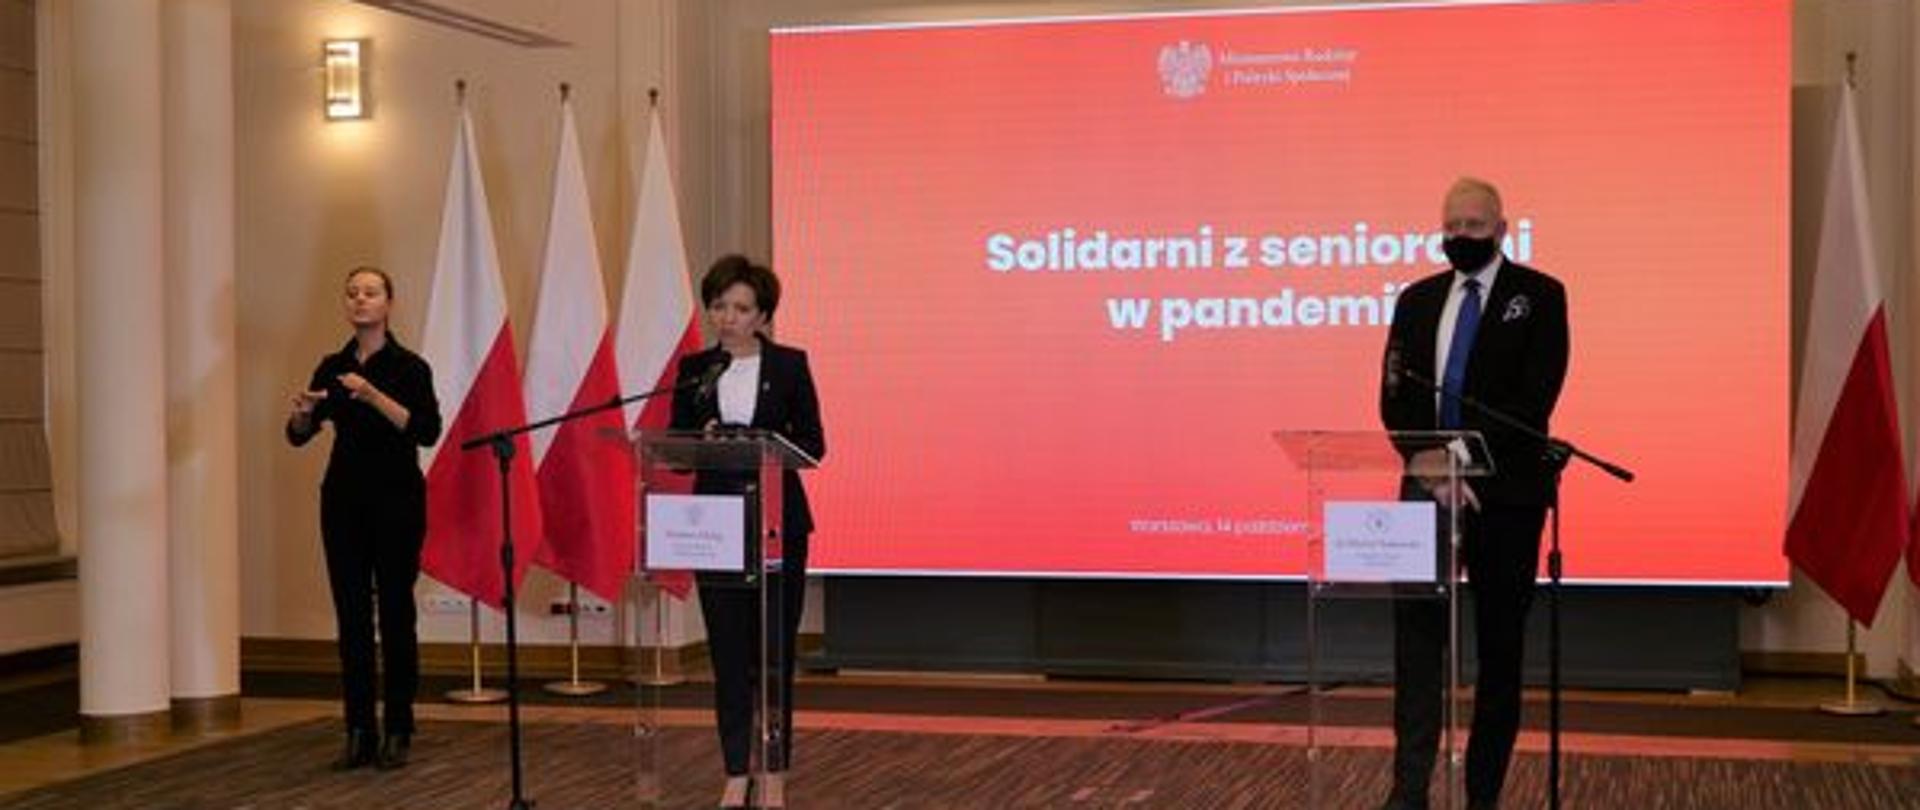 Sala. Minister Maląg stoi przy mównicy. Uczestniczy w brefingu. Z tycłu baner z napisem "Solidarni z seniorami w pandemii".